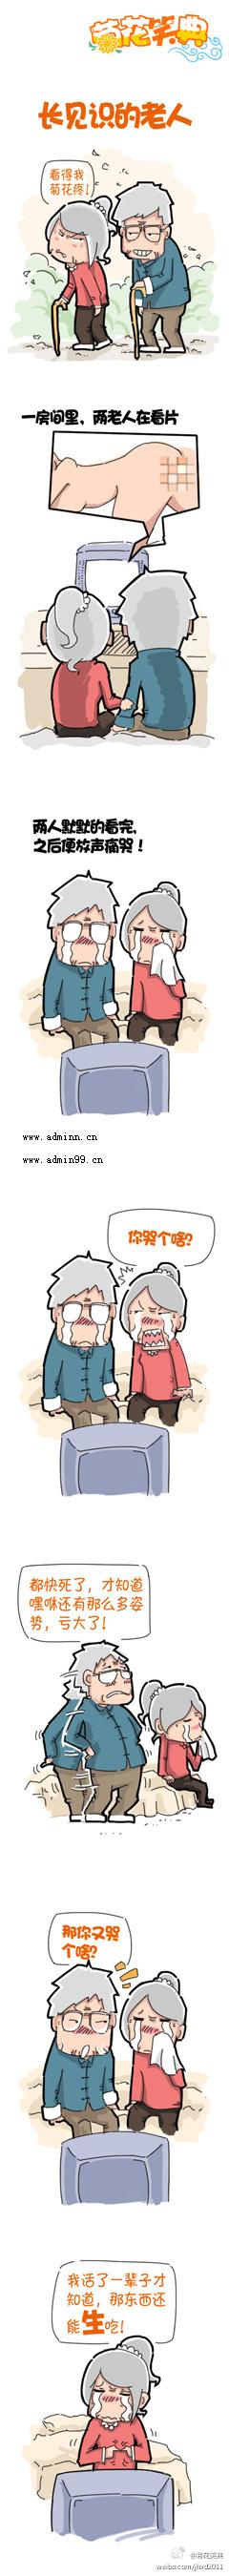 菊花笑典漫画：长见识的老人，原来那东西还能生吃！